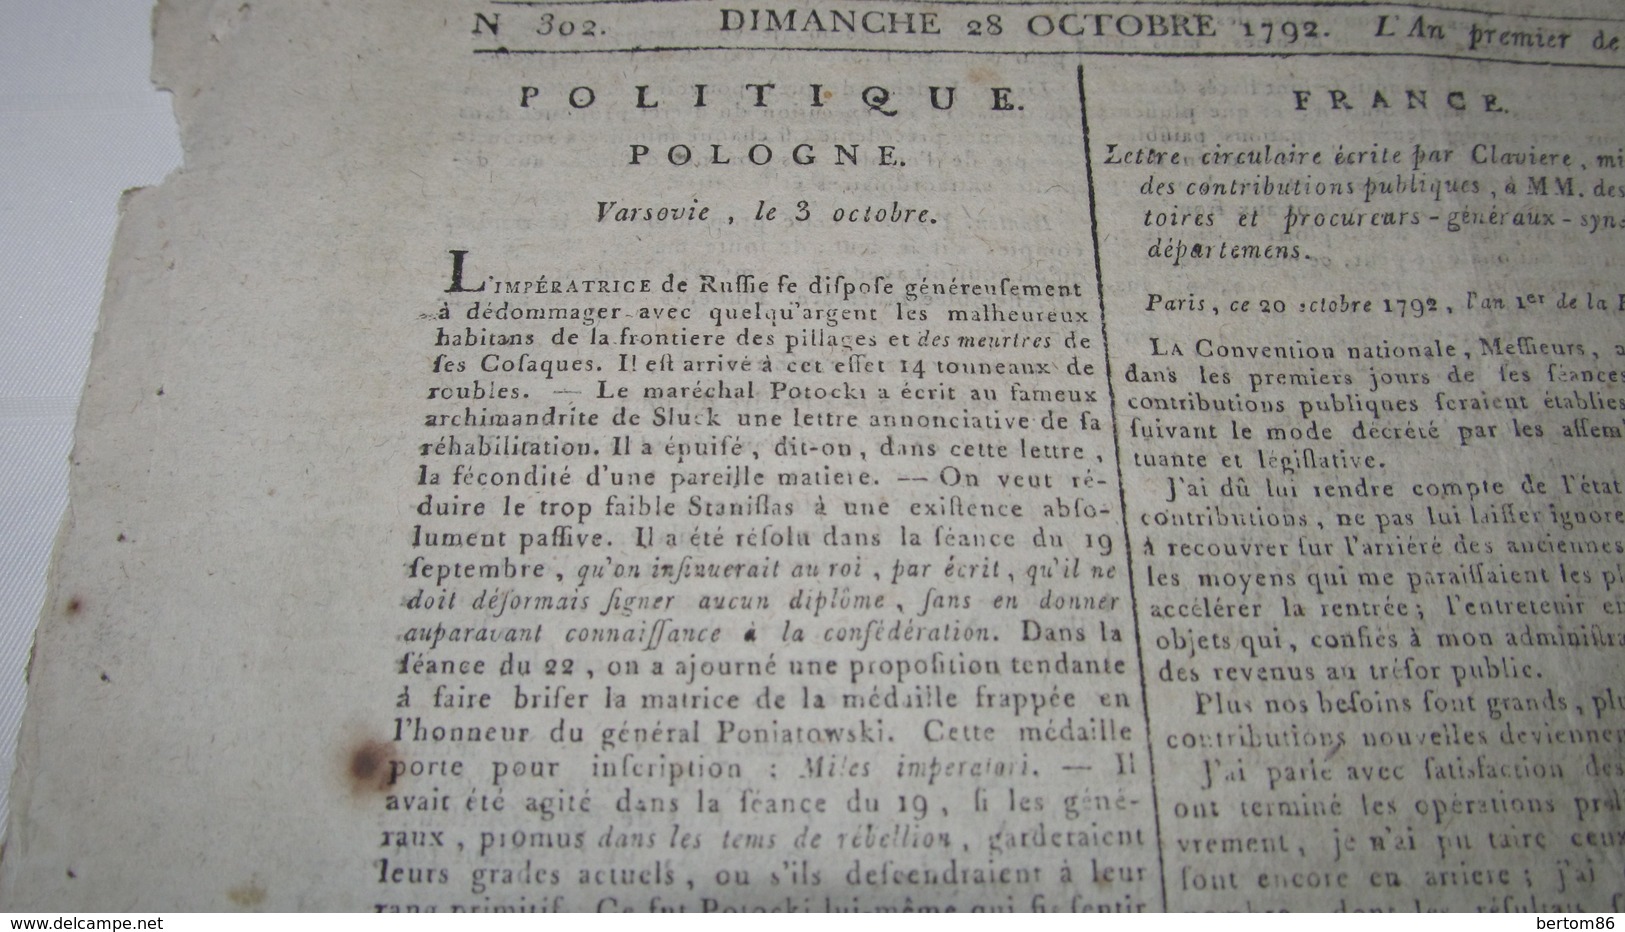 POLOGNE - POTOCKI - CATHERINE II ET SES COSAQUES - LA POLOGNE SOUS LA MAIN DES RUSSES -  PONIATOWSK I // DANTON - 1792 - Journaux Anciens - Avant 1800